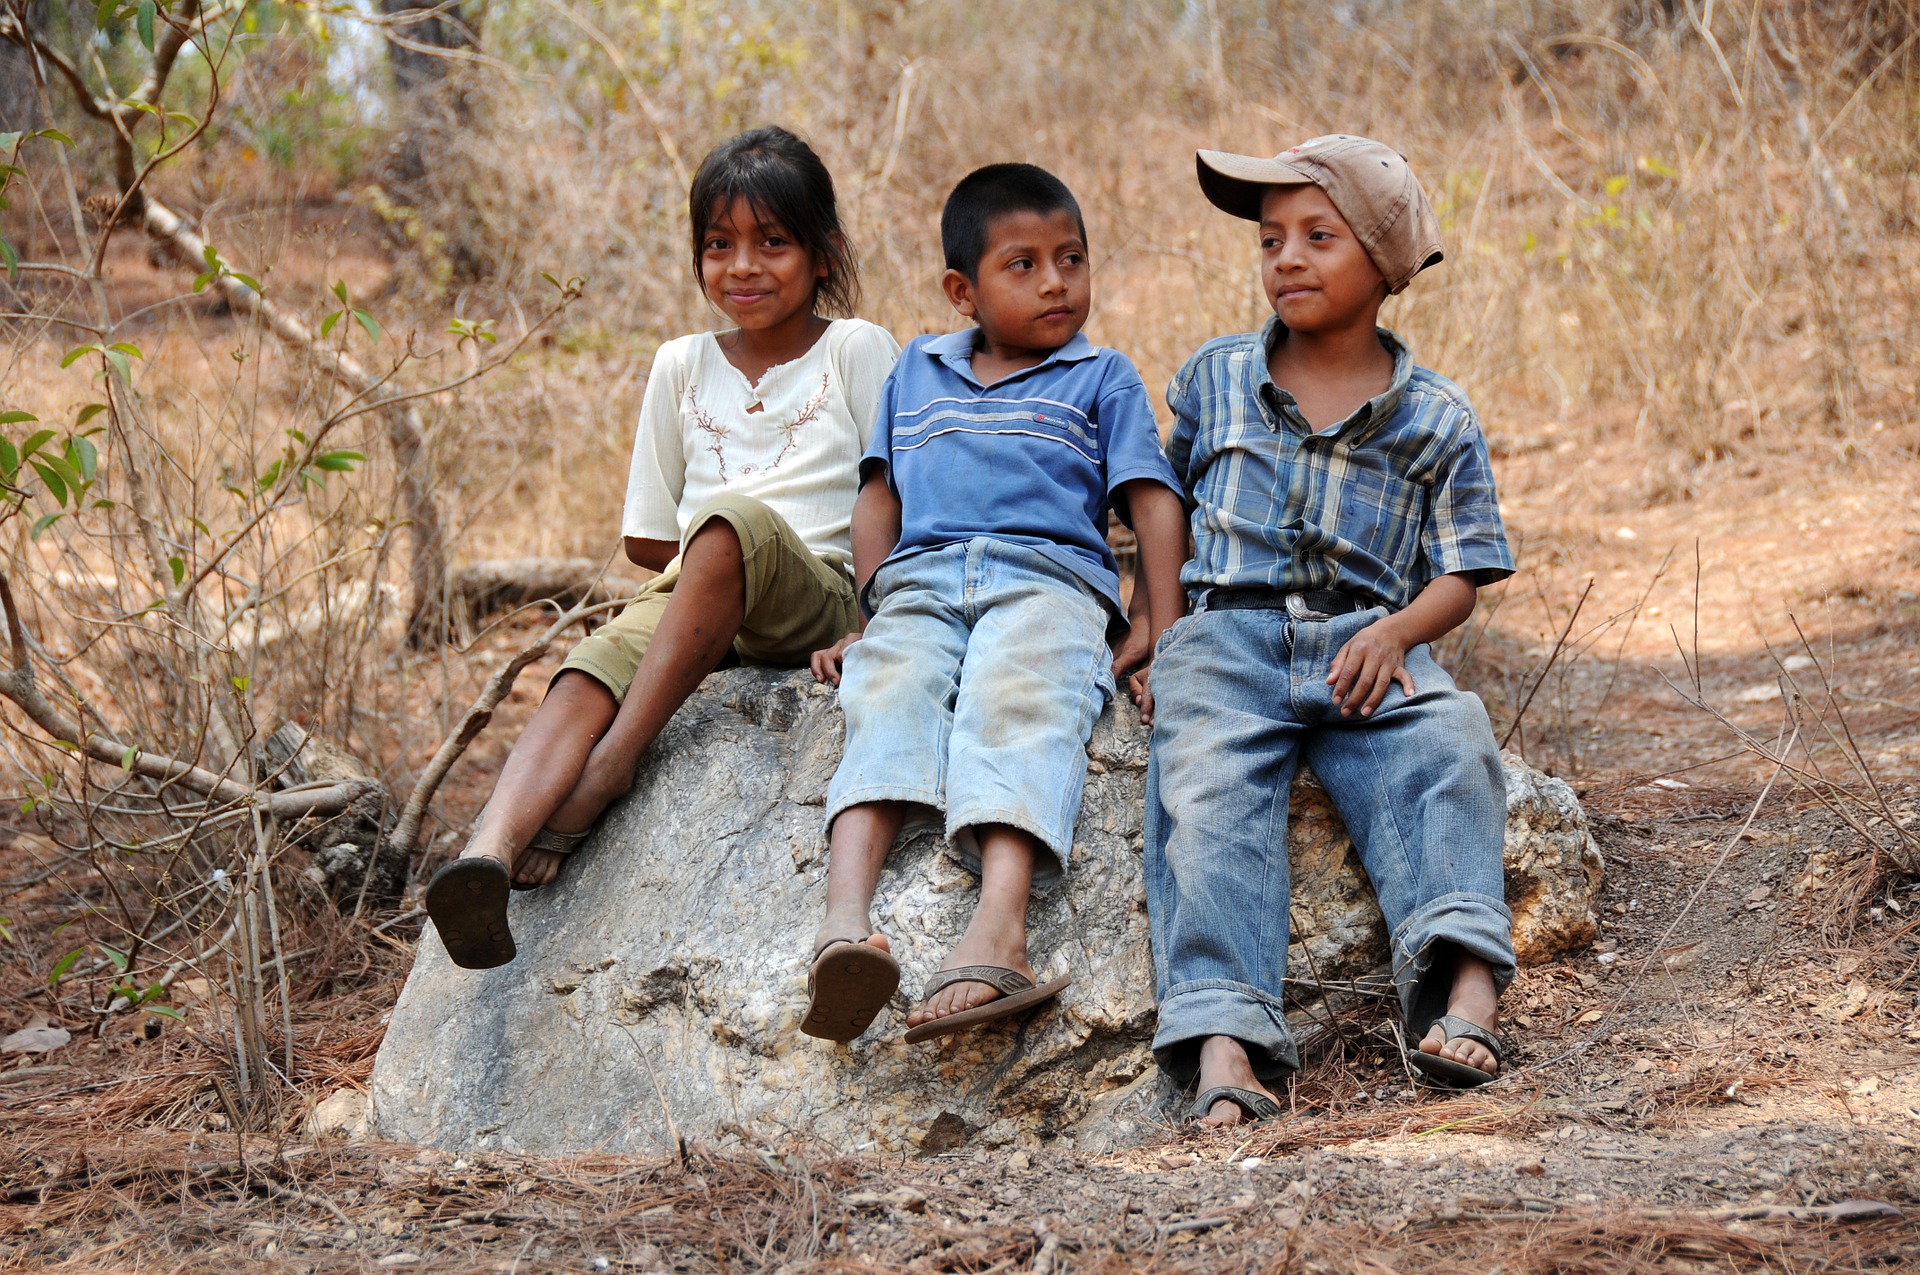 Latin American Drug Cartels Target Impoverished Children